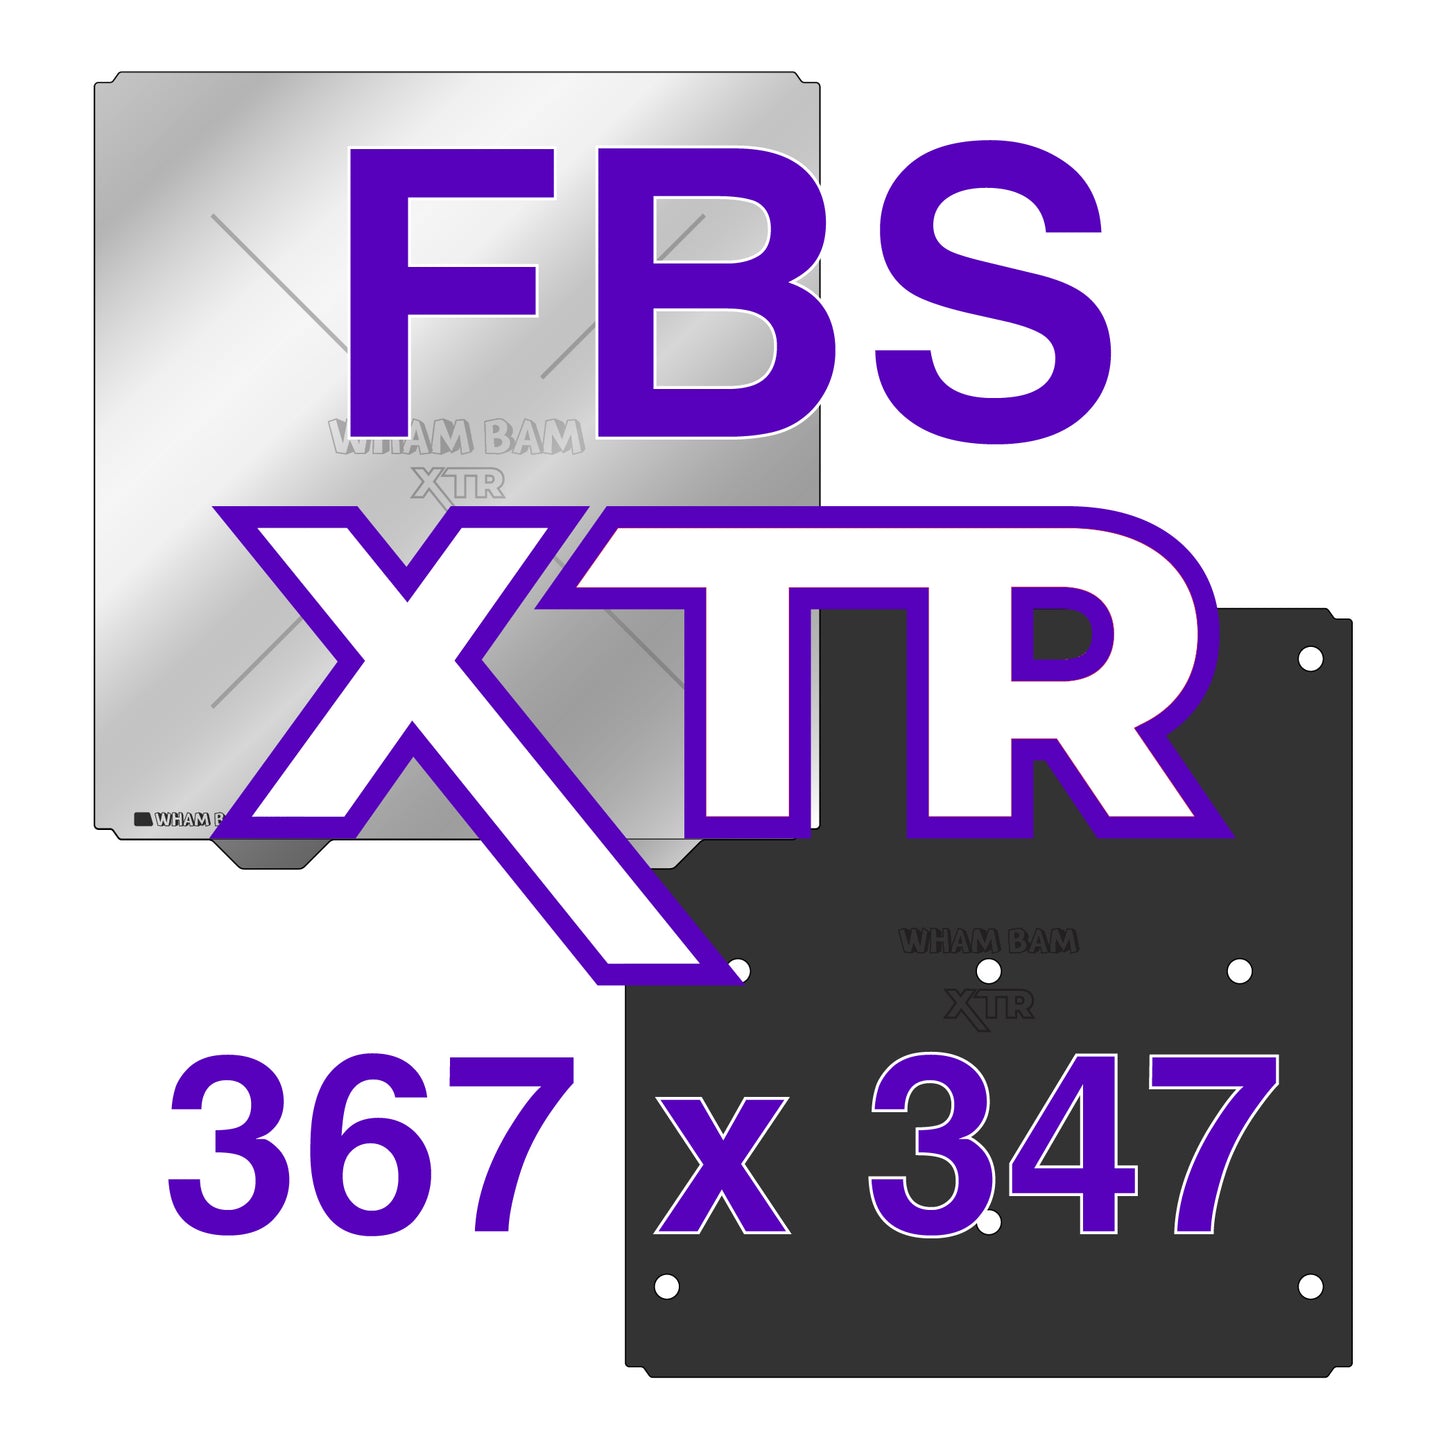 367 x 347 - XTR - Kit with Pre-Installed PEX Build Surface - Raise3D Pro 3